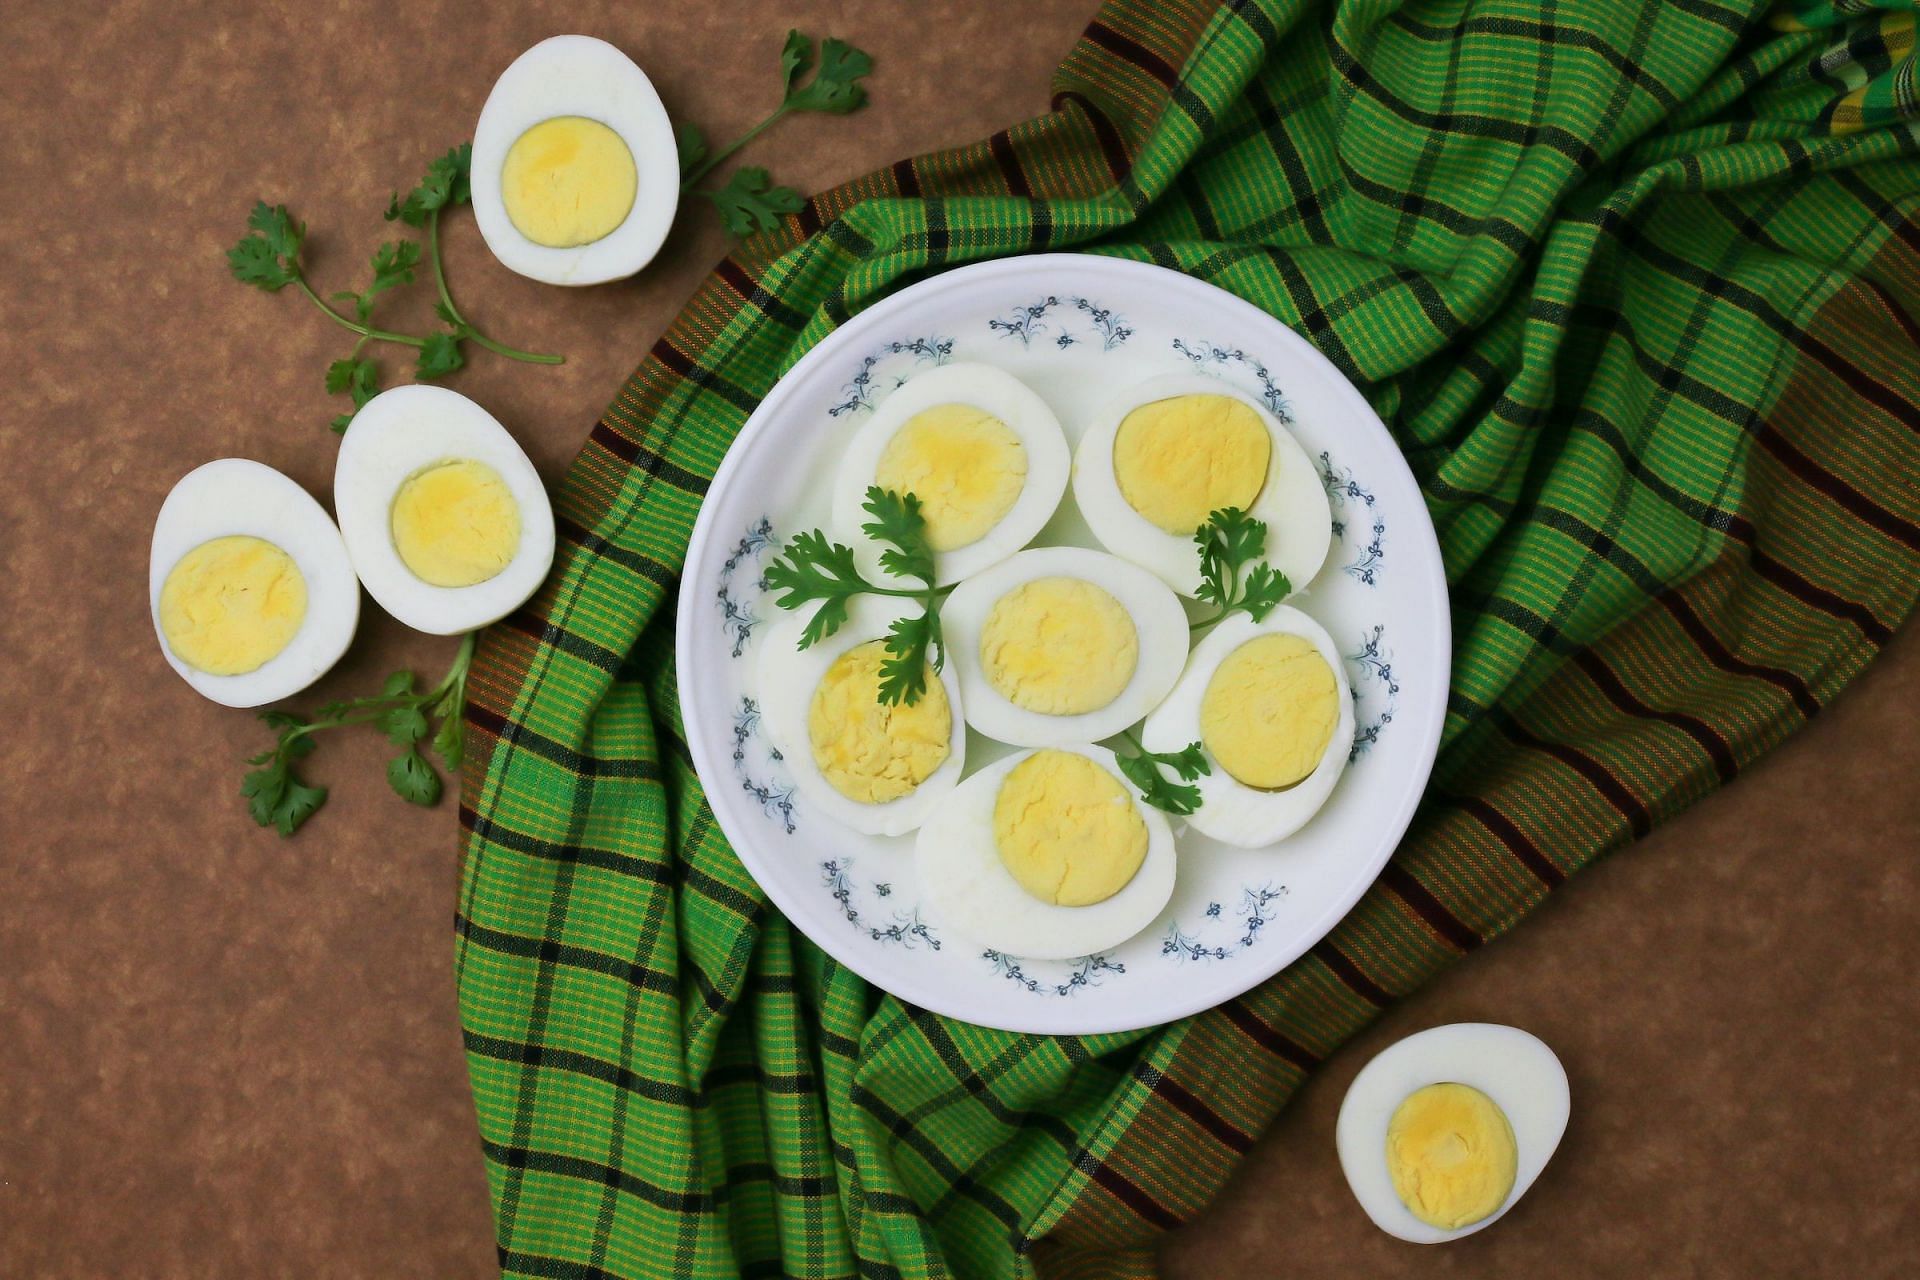 Eating eggs (Image via Unsplash/Tamanna Rumee)